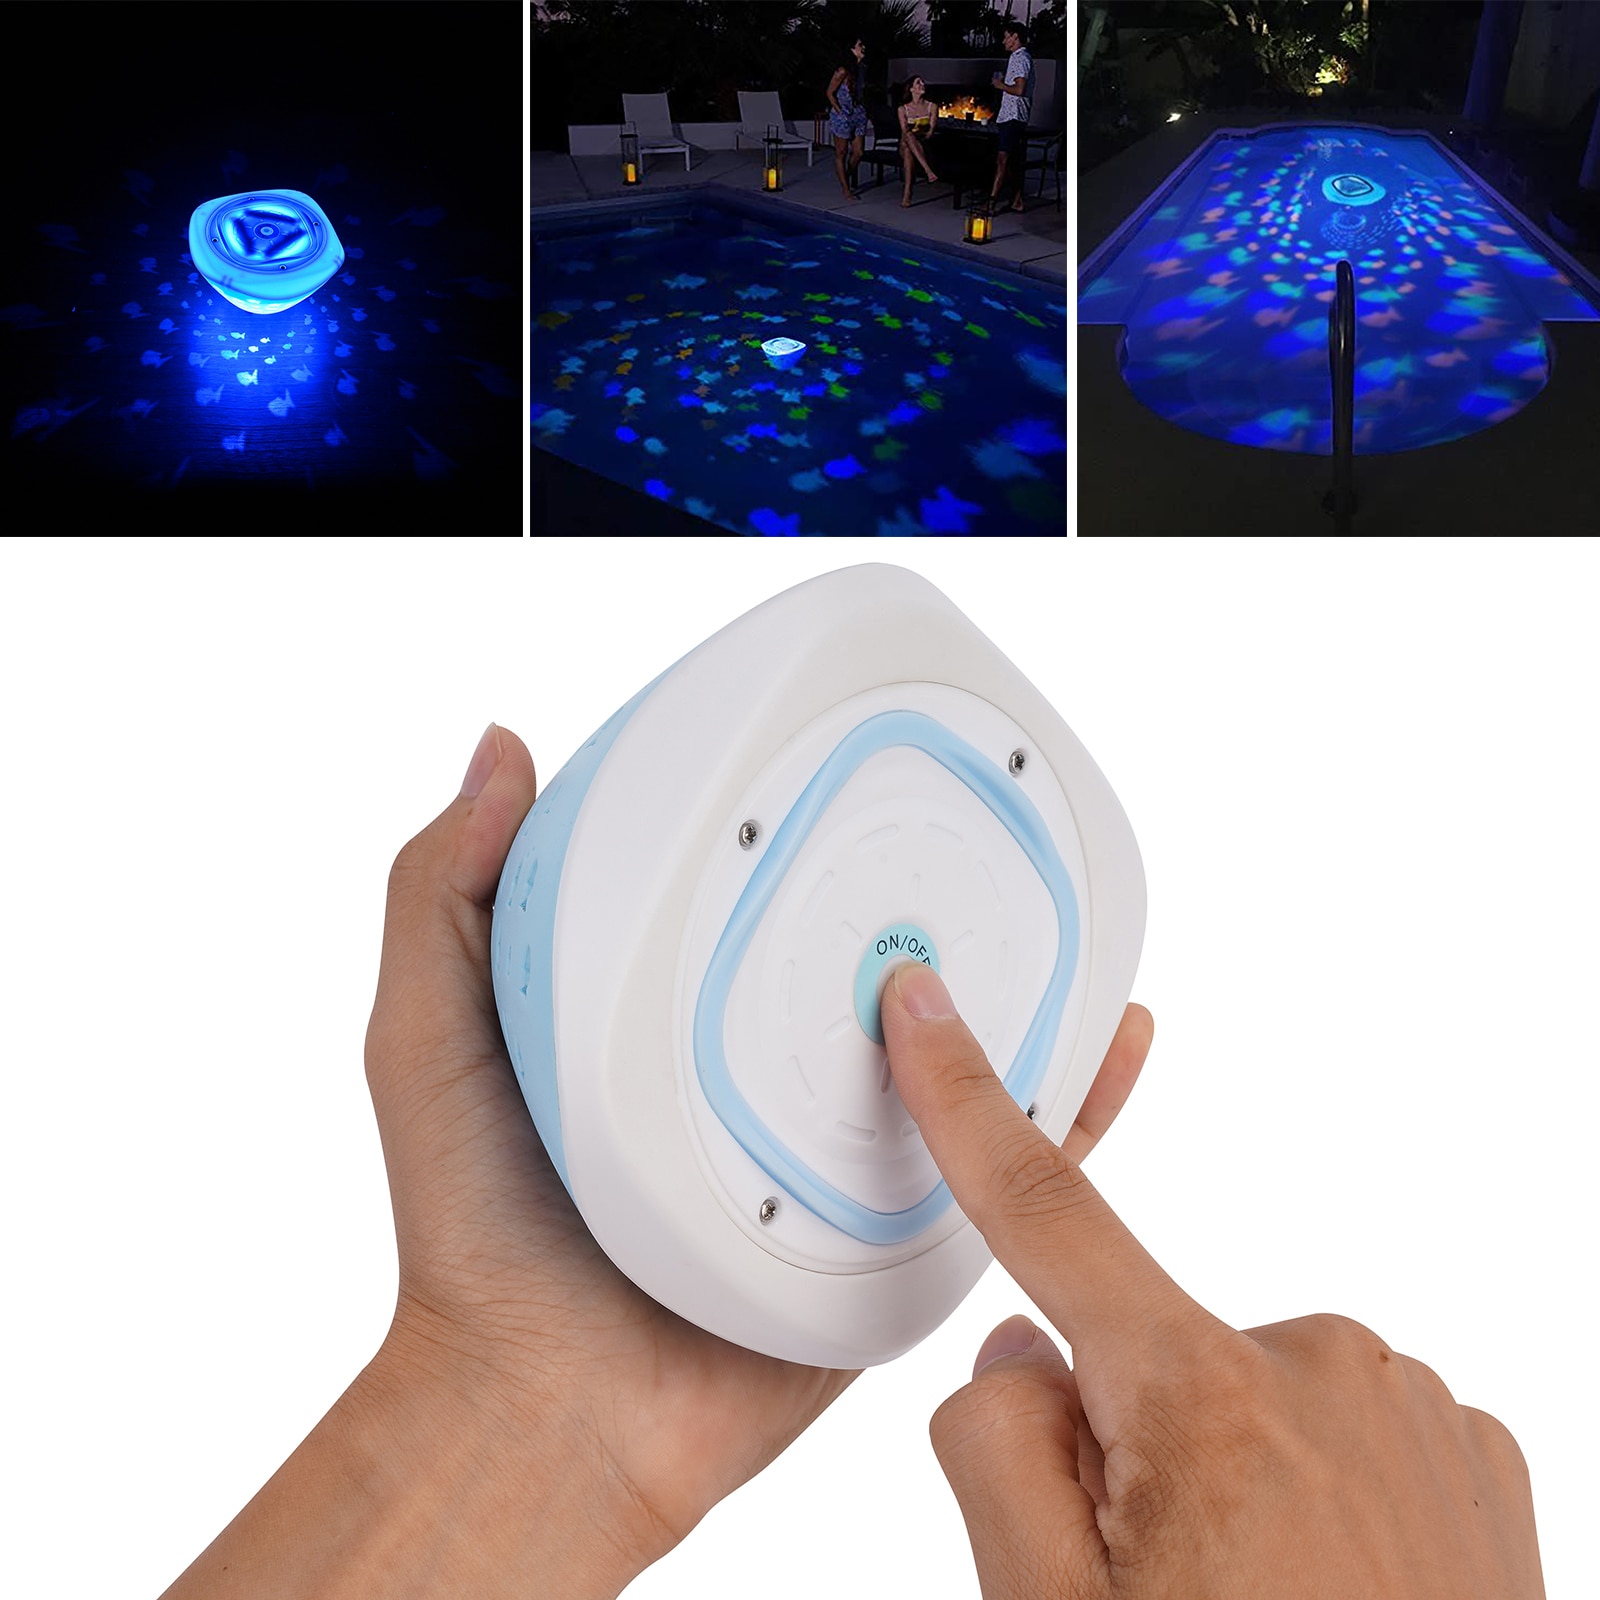 새로운 다채로운 LED 수영장 빛 수중 방수 풍경 램프 욕조 물고기 탱크 목욕 수영장 여름